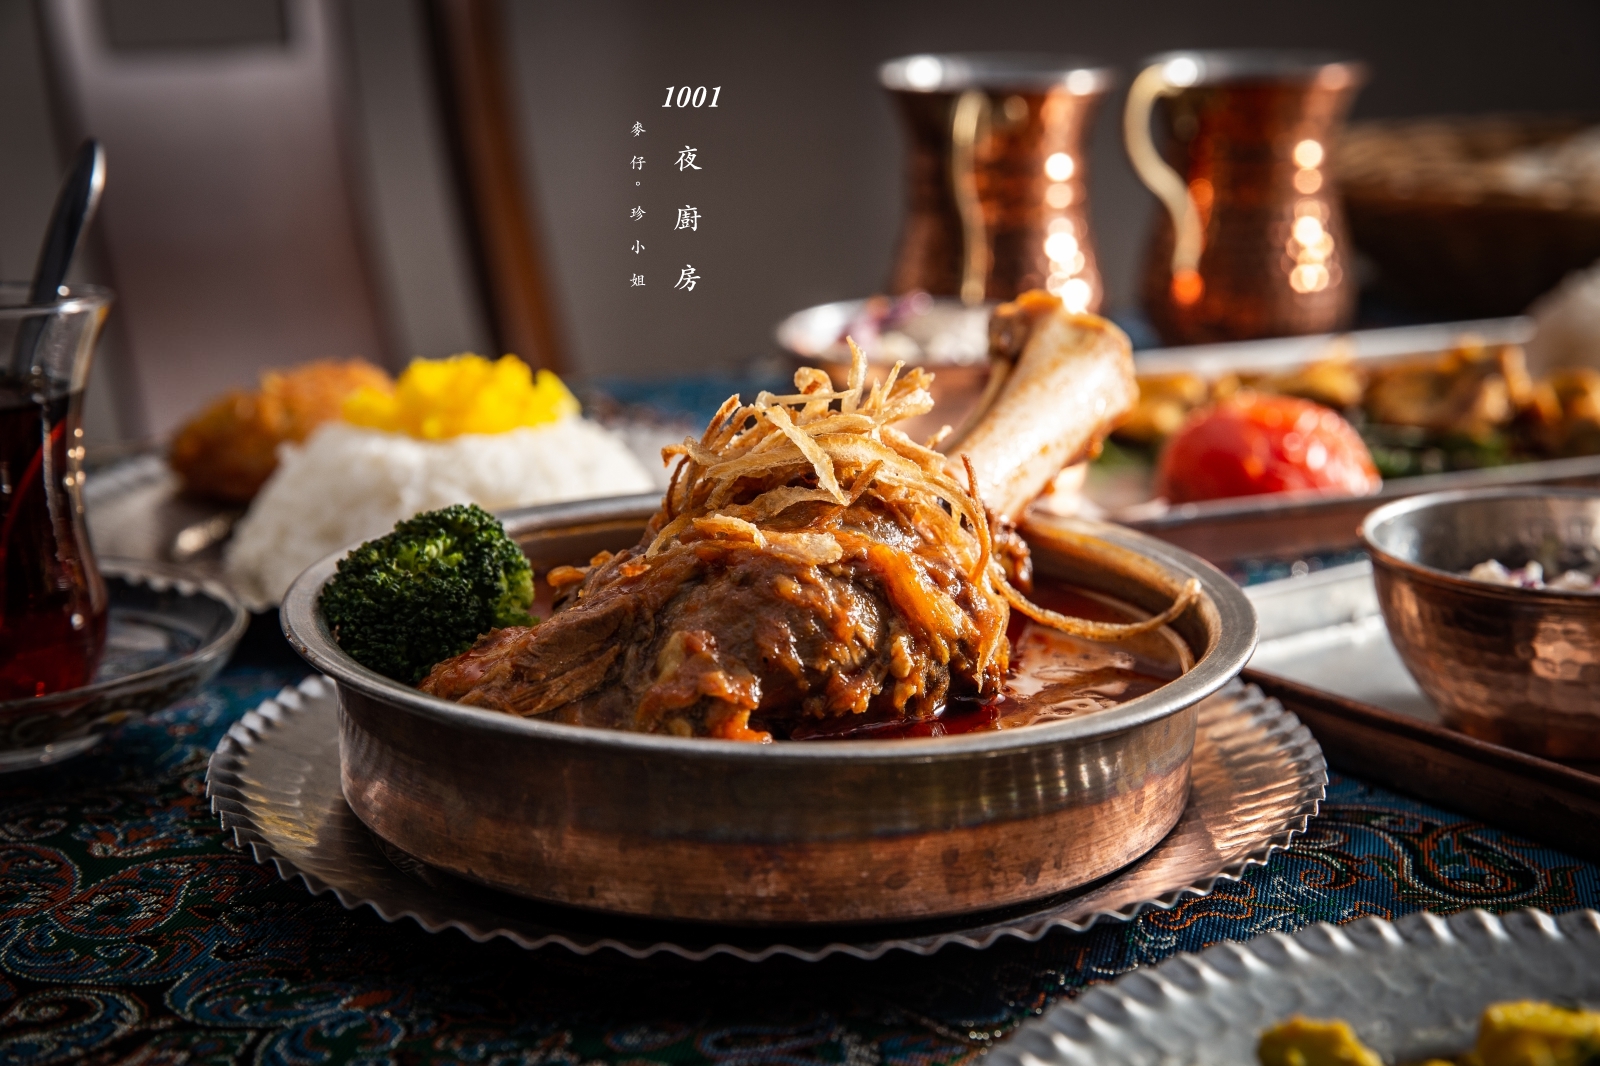 正宗的古波斯料理在台北也吃得到。一千零一夜廚房 1001 Nights Kitchen ｜符合清真認證的清真料理～伊朗美食配上性感的肚皮舞表演實在享受。捷運松山站美食